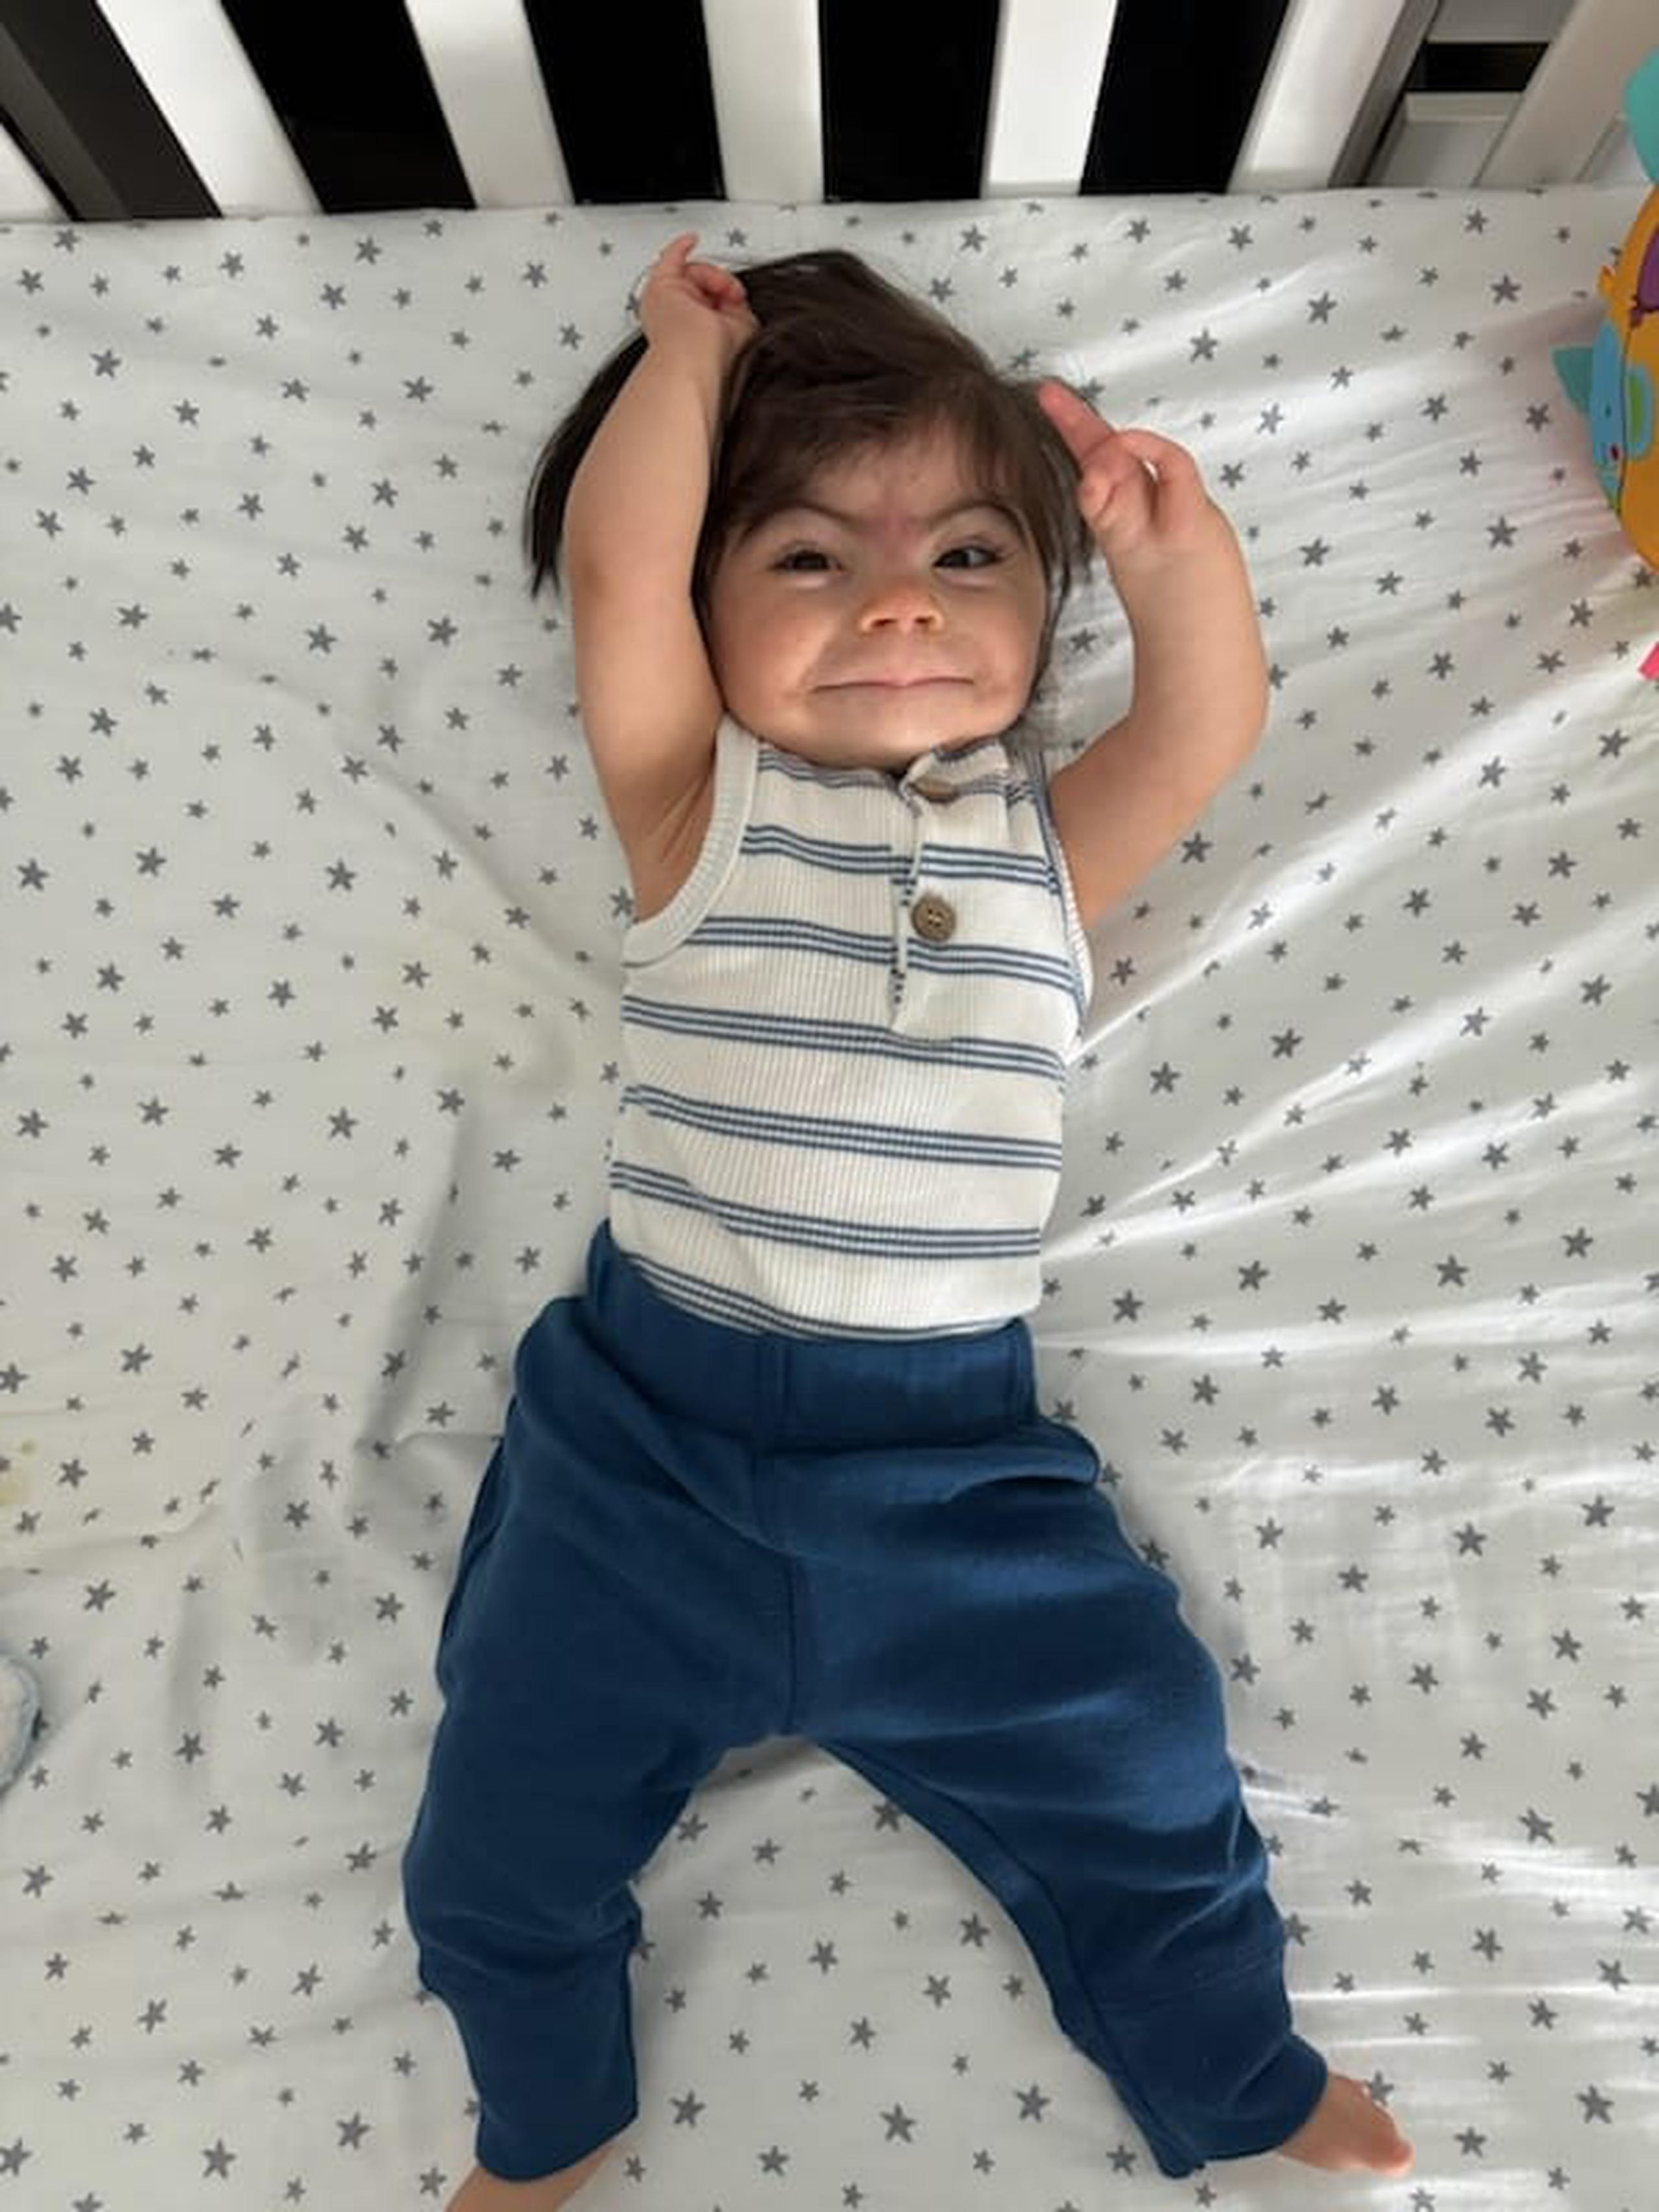 Antonio Viera Gerena de 11 meses de nacido fue diagnosticado con una enfermedad genética llamada Síndrome de Cornelia De Lange y necesita ayuda para evaluación y tratamiento.